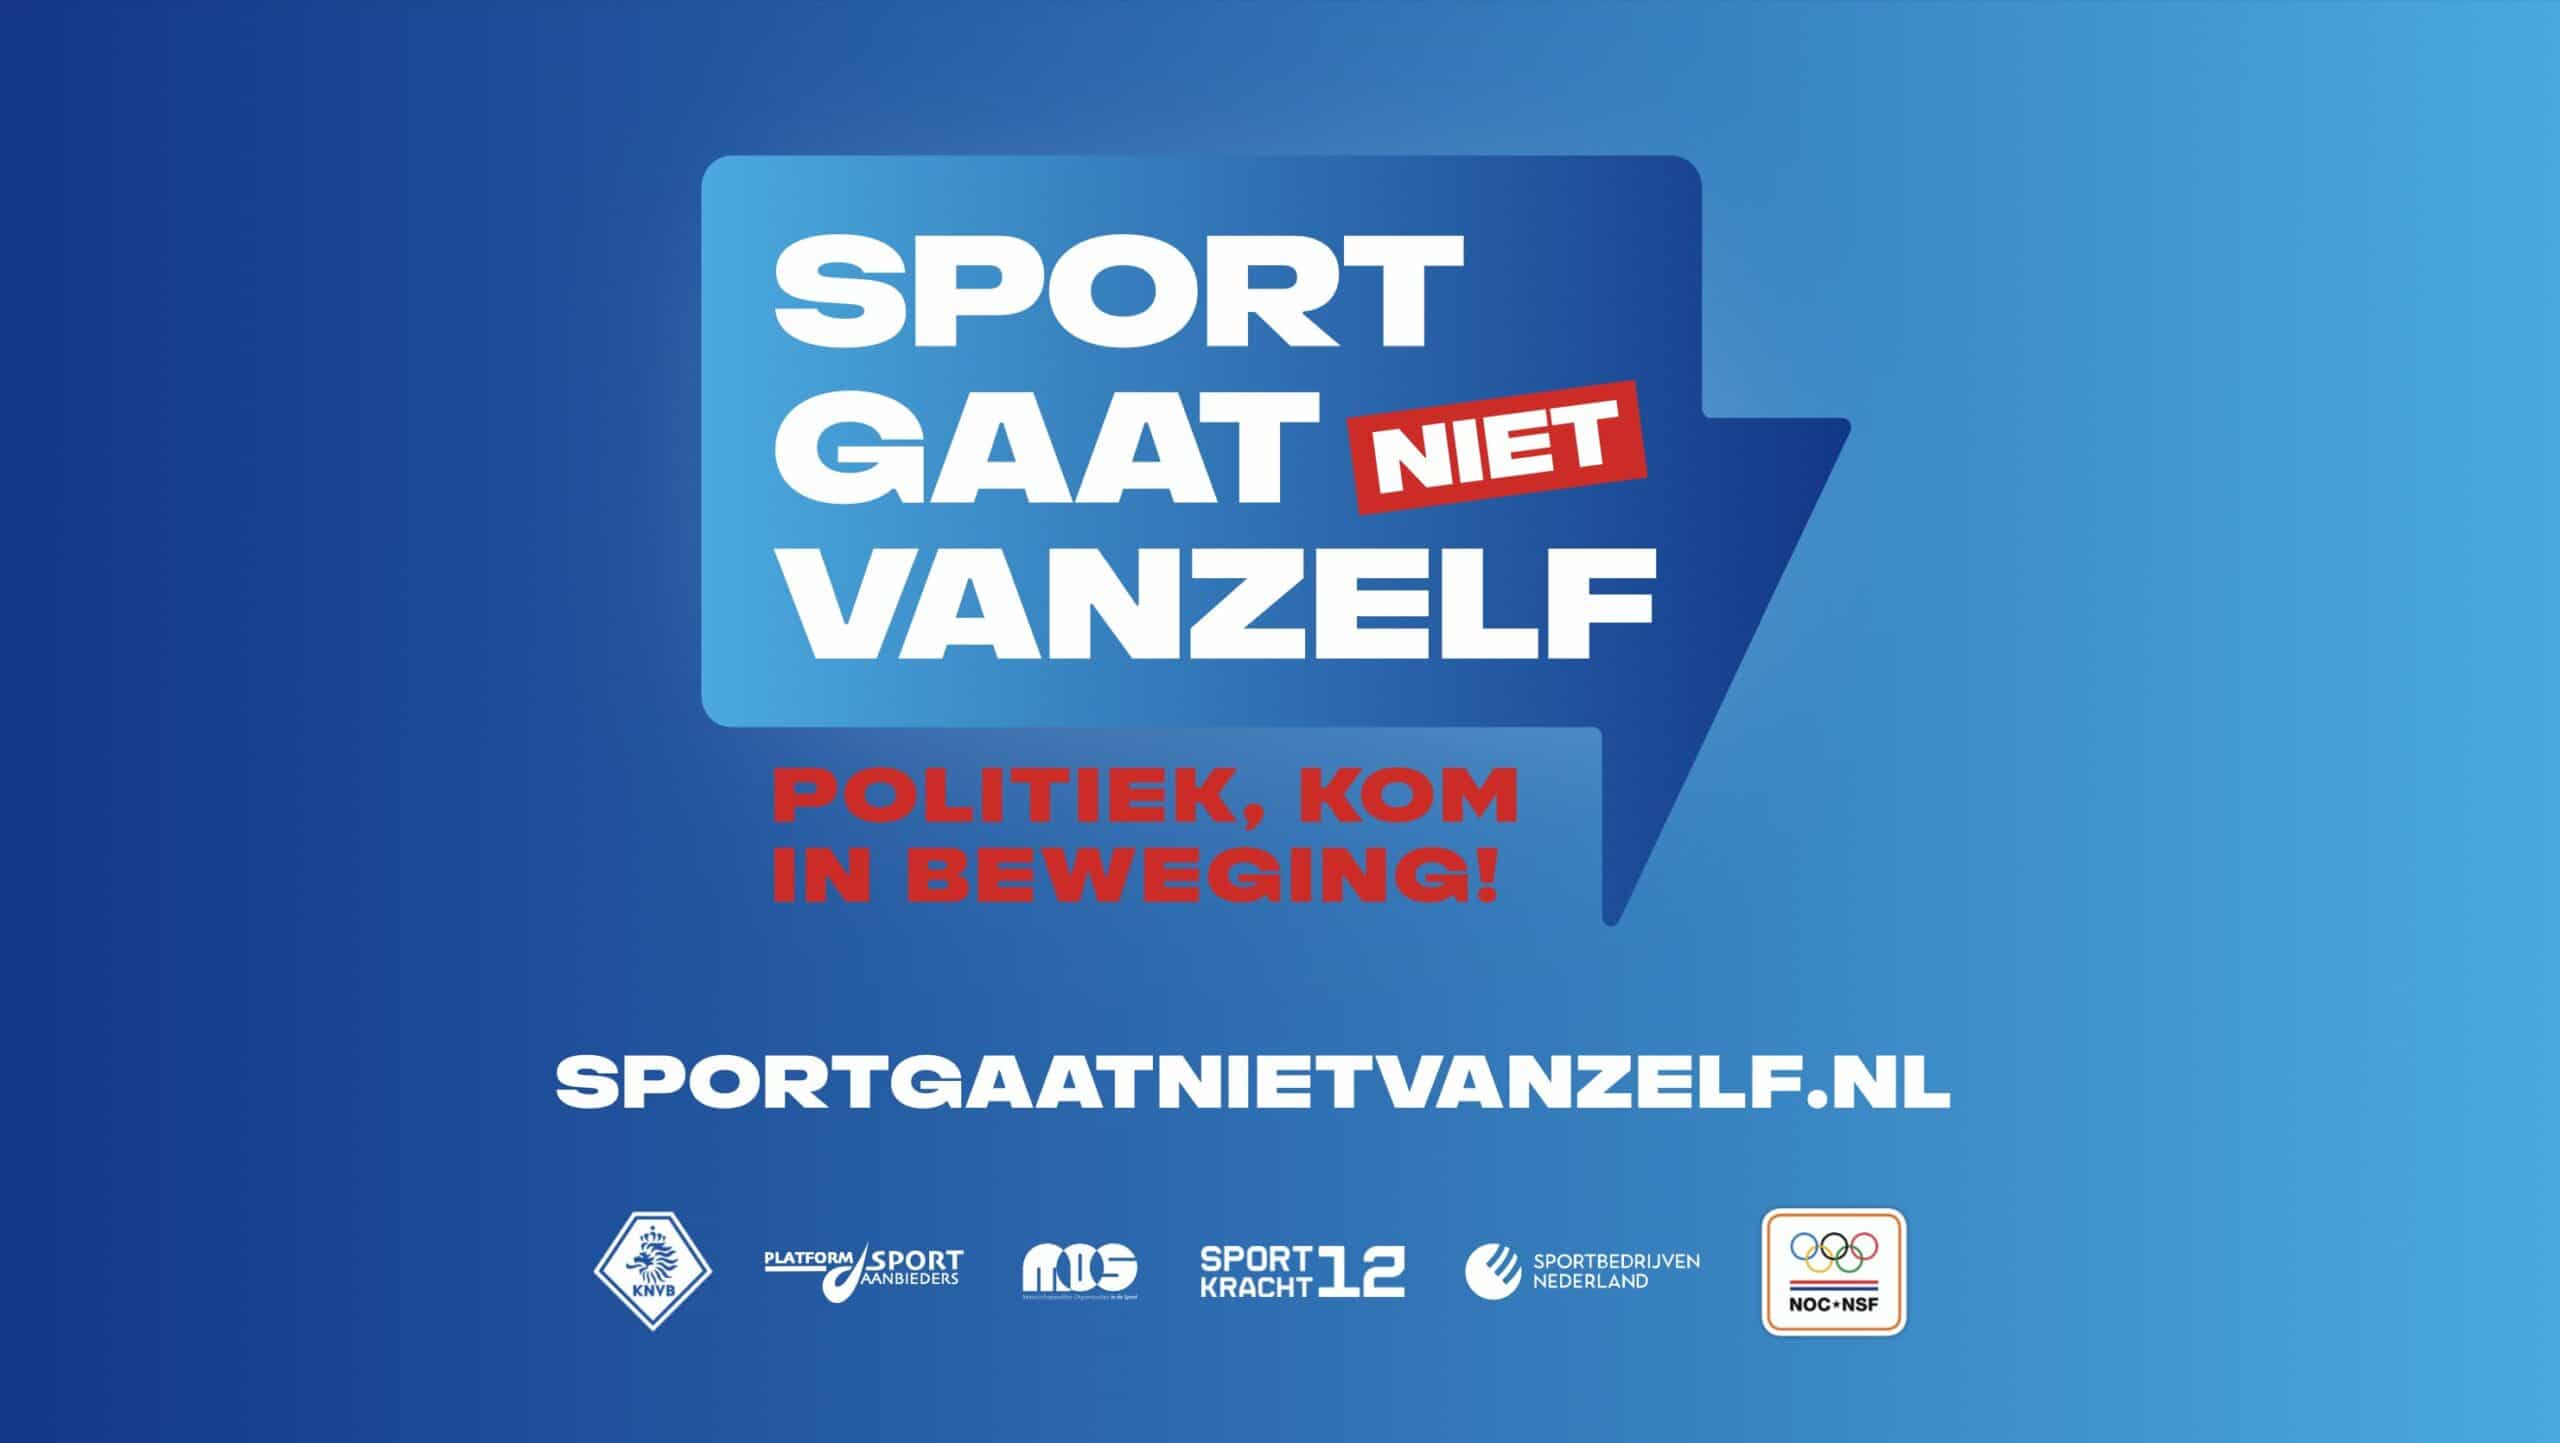 Versterk Nederland met de kracht van sport!